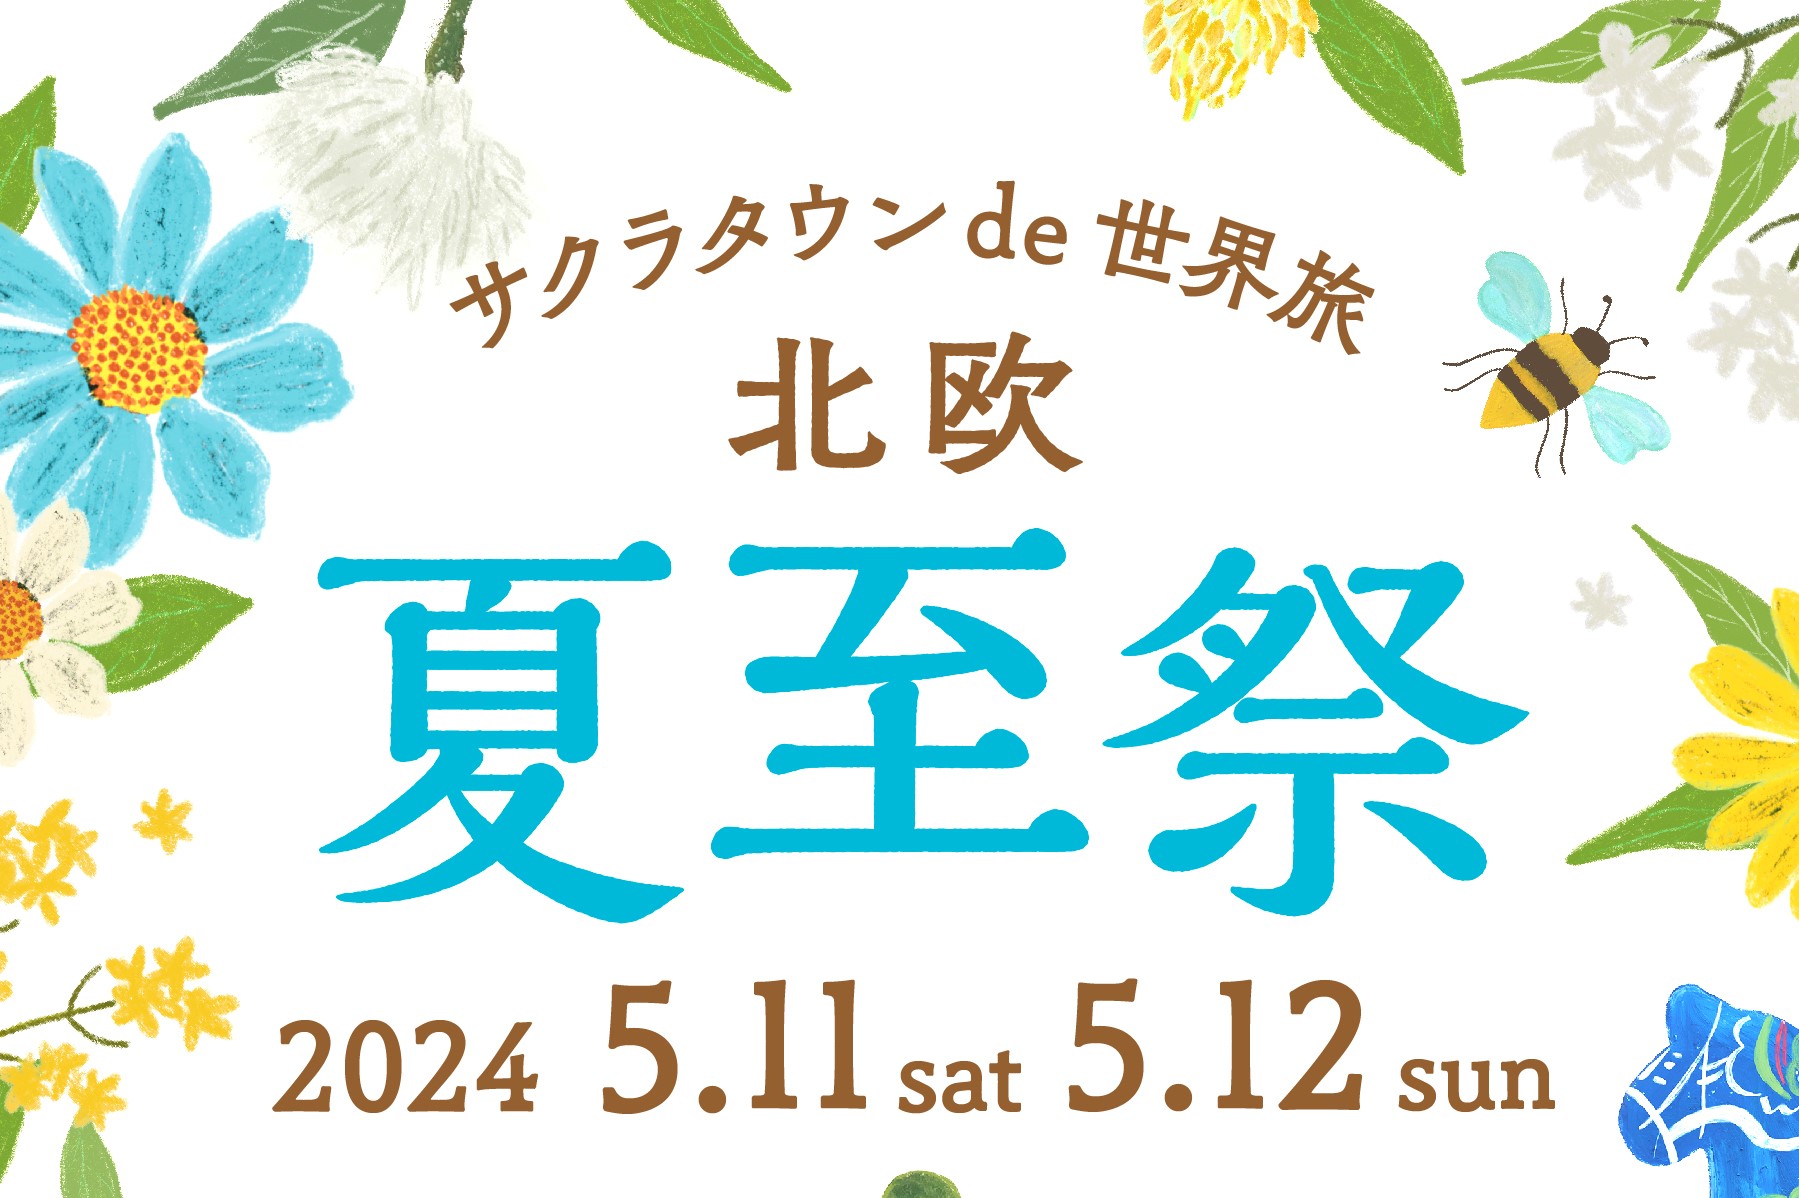 ＼5月11日・12日開催／【サクラタウン de 世界旅 北欧～夏至祭～】ブレケル・オスカルさんによる日本茶セミナー